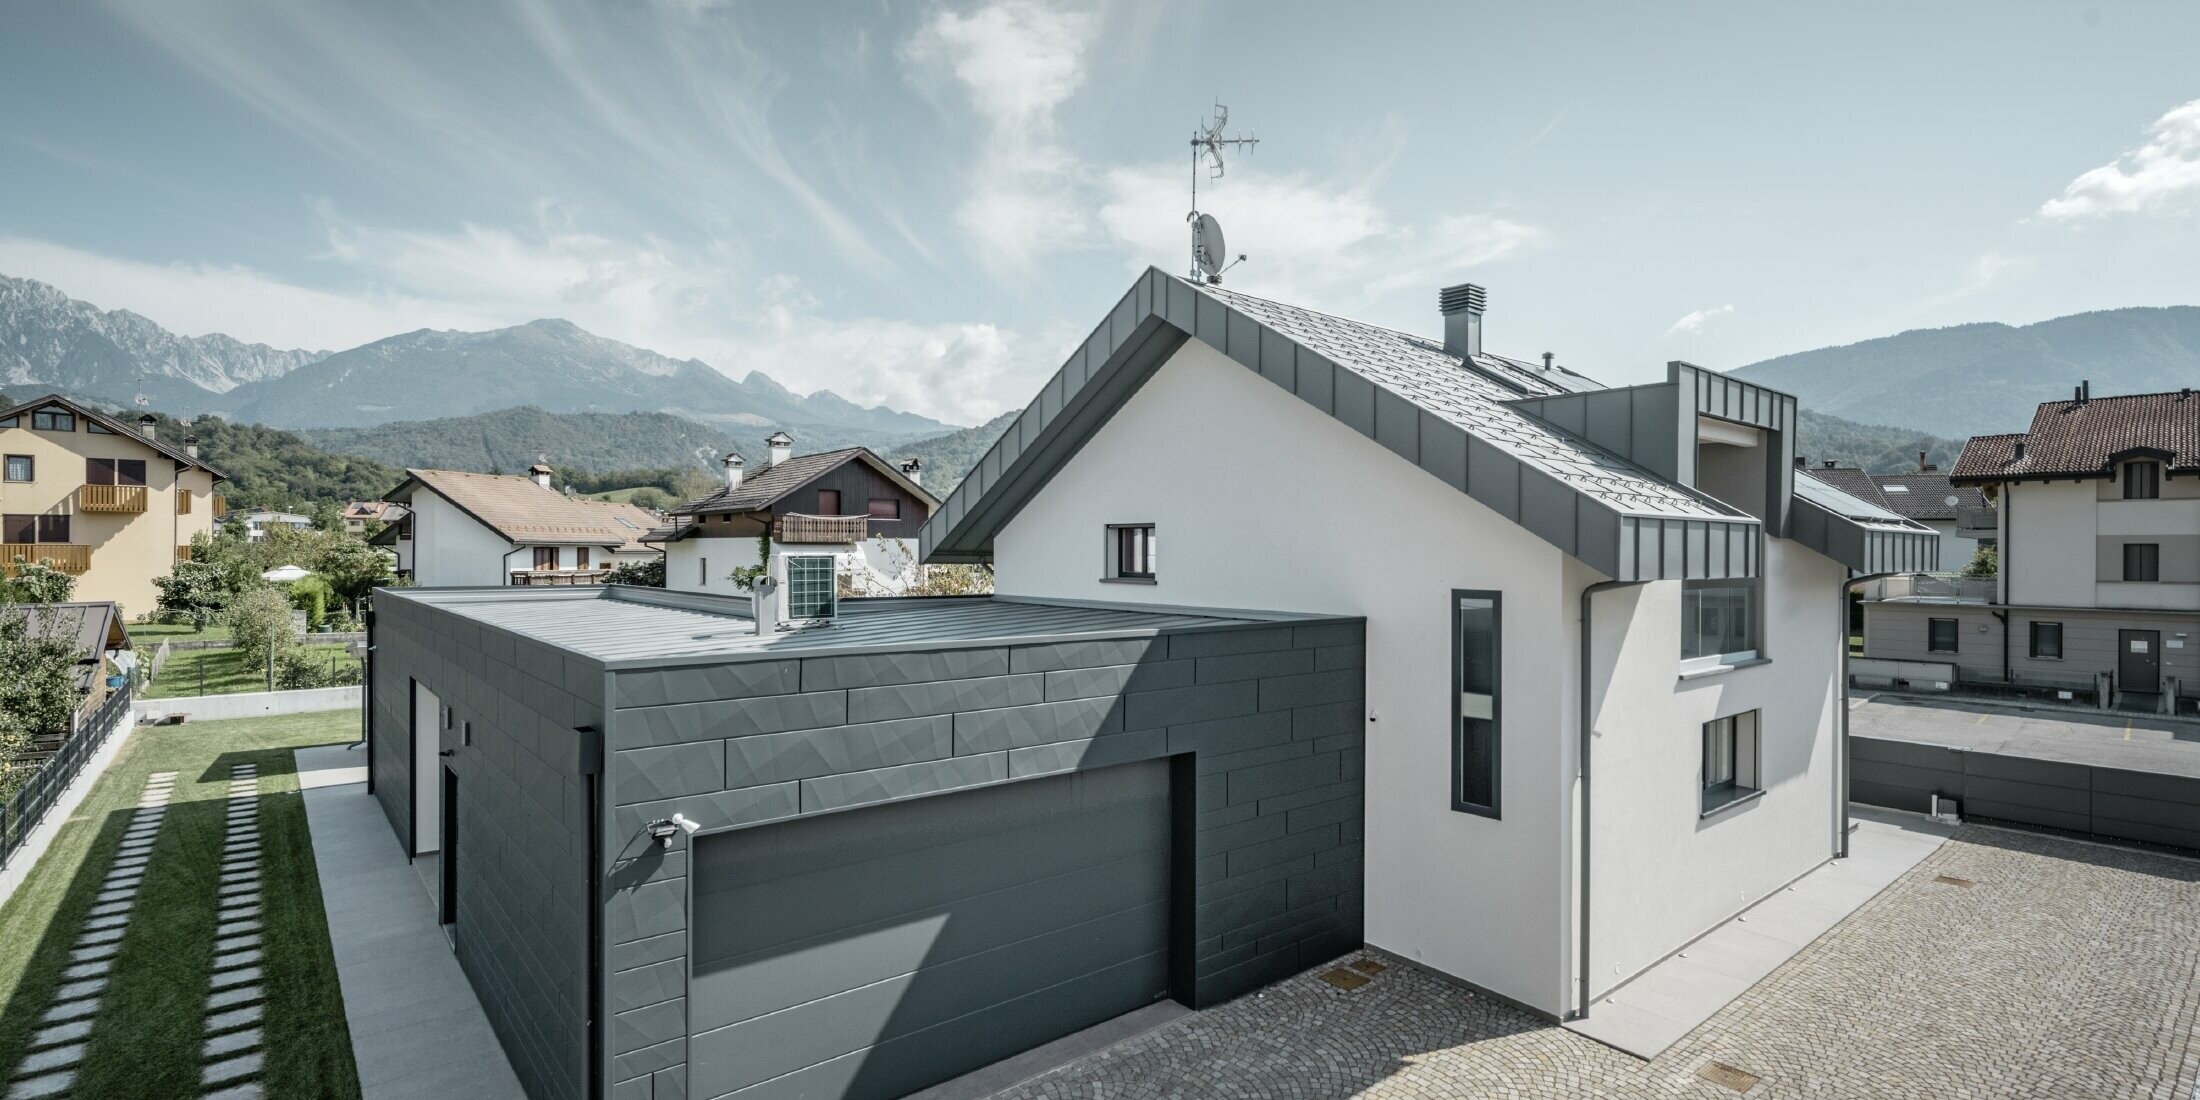 Foto vom Einfamilienhaus, die Garage ist mit Siding.X gedeckt, das Dach ist in R.16 in der Farbe P.10 hellgrau gedeckt.